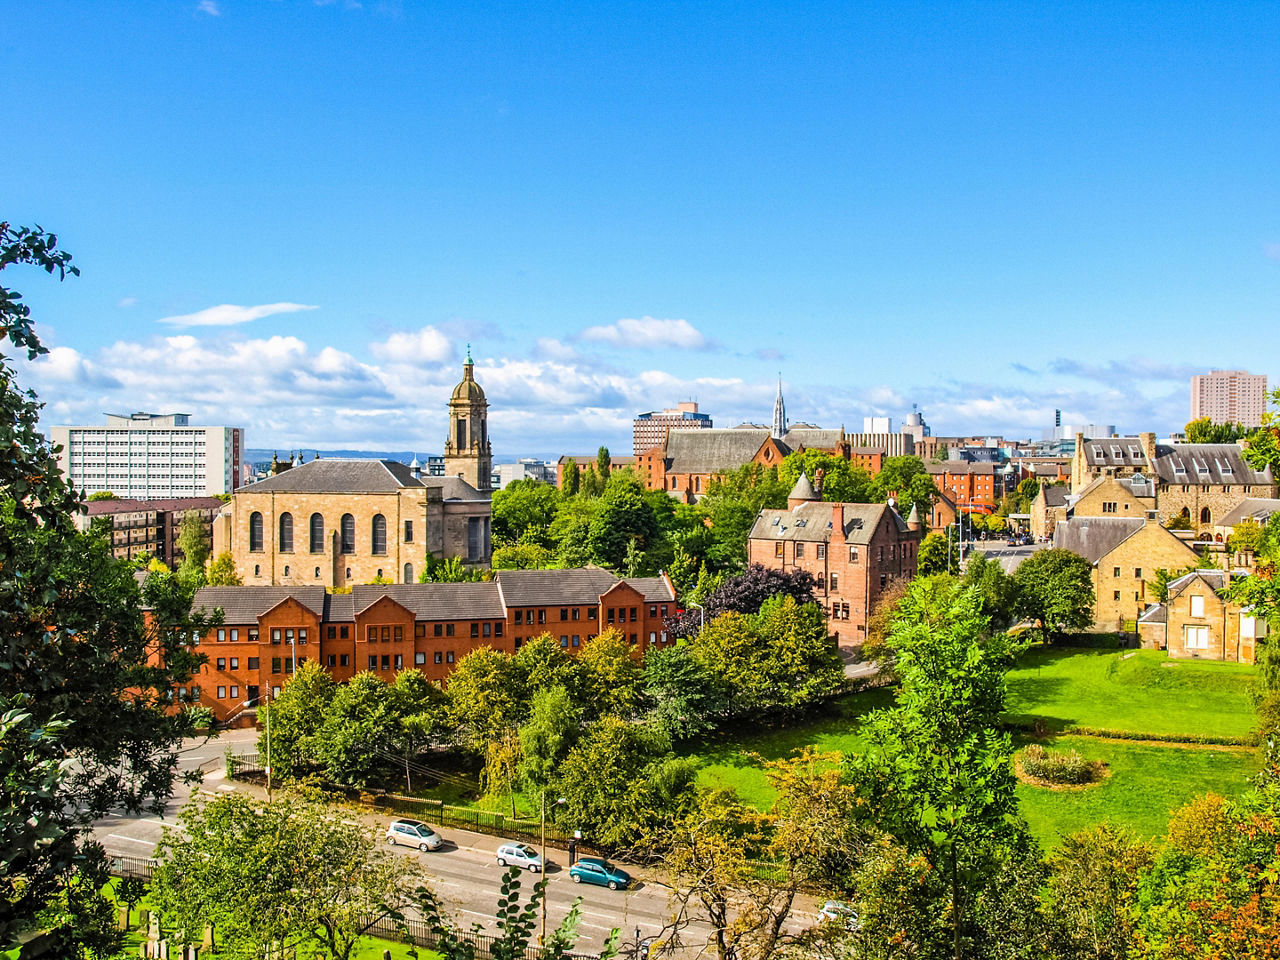 Glasgow (Greenock), Scotland, City View